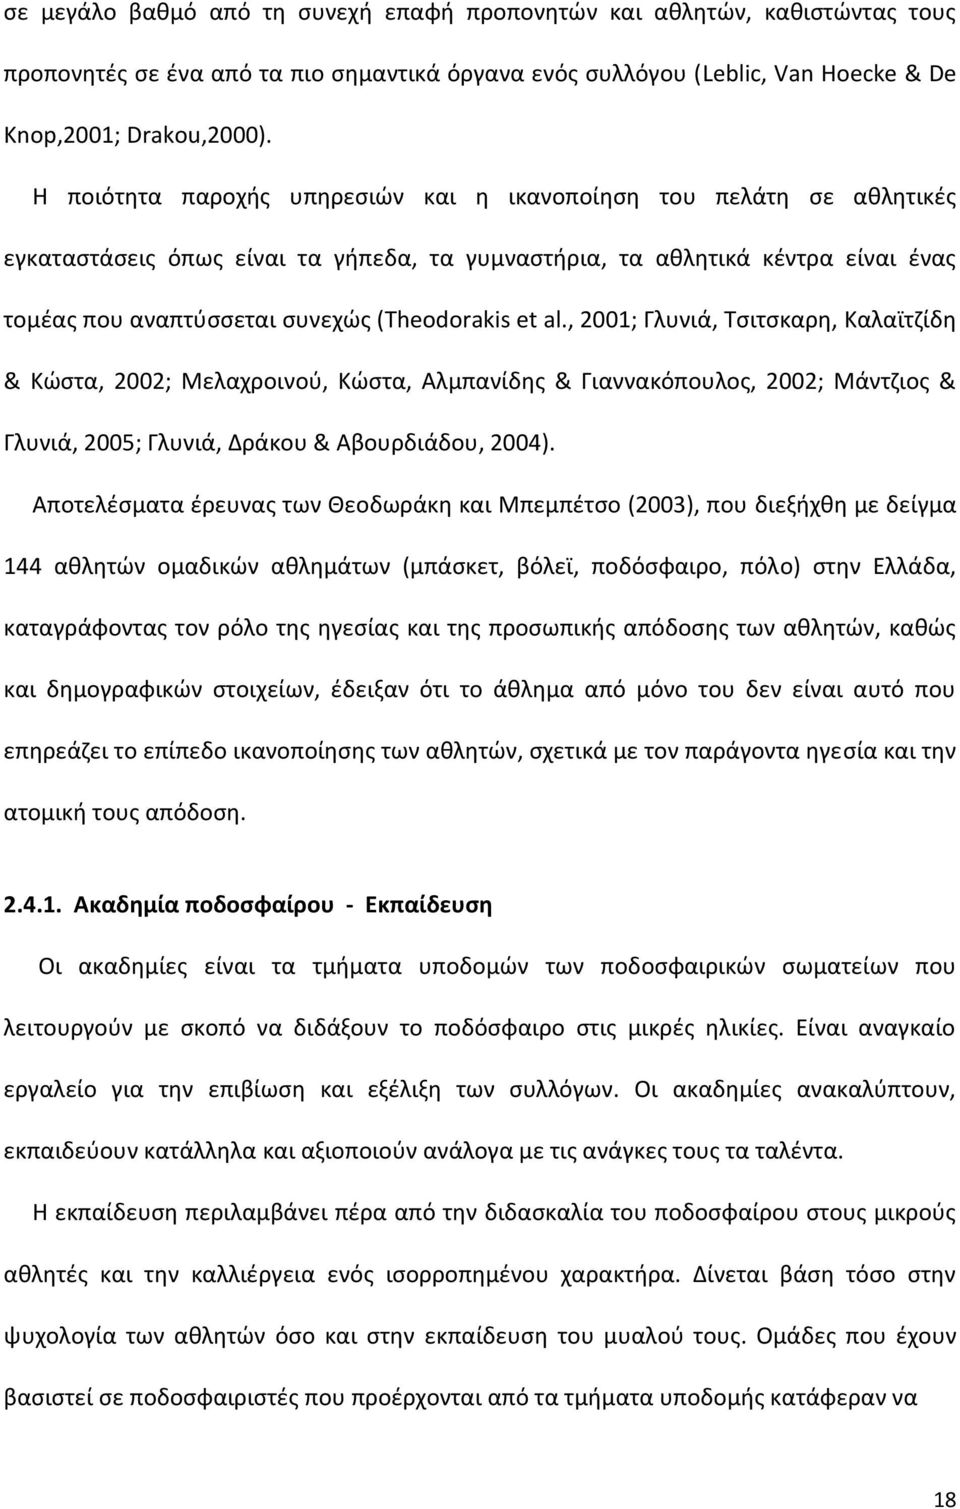 et al., 2001; Γλυνιά, Τσιτσκαρη, Καλαϊτζίδη & Κώστα, 2002; Μελαχροινού, Κώστα, Αλμπανίδης & Γιαννακόπουλος, 2002; Μάντζιος & Γλυνιά, 2005; Γλυνιά, Δράκου & Αβουρδιάδου, 2004).